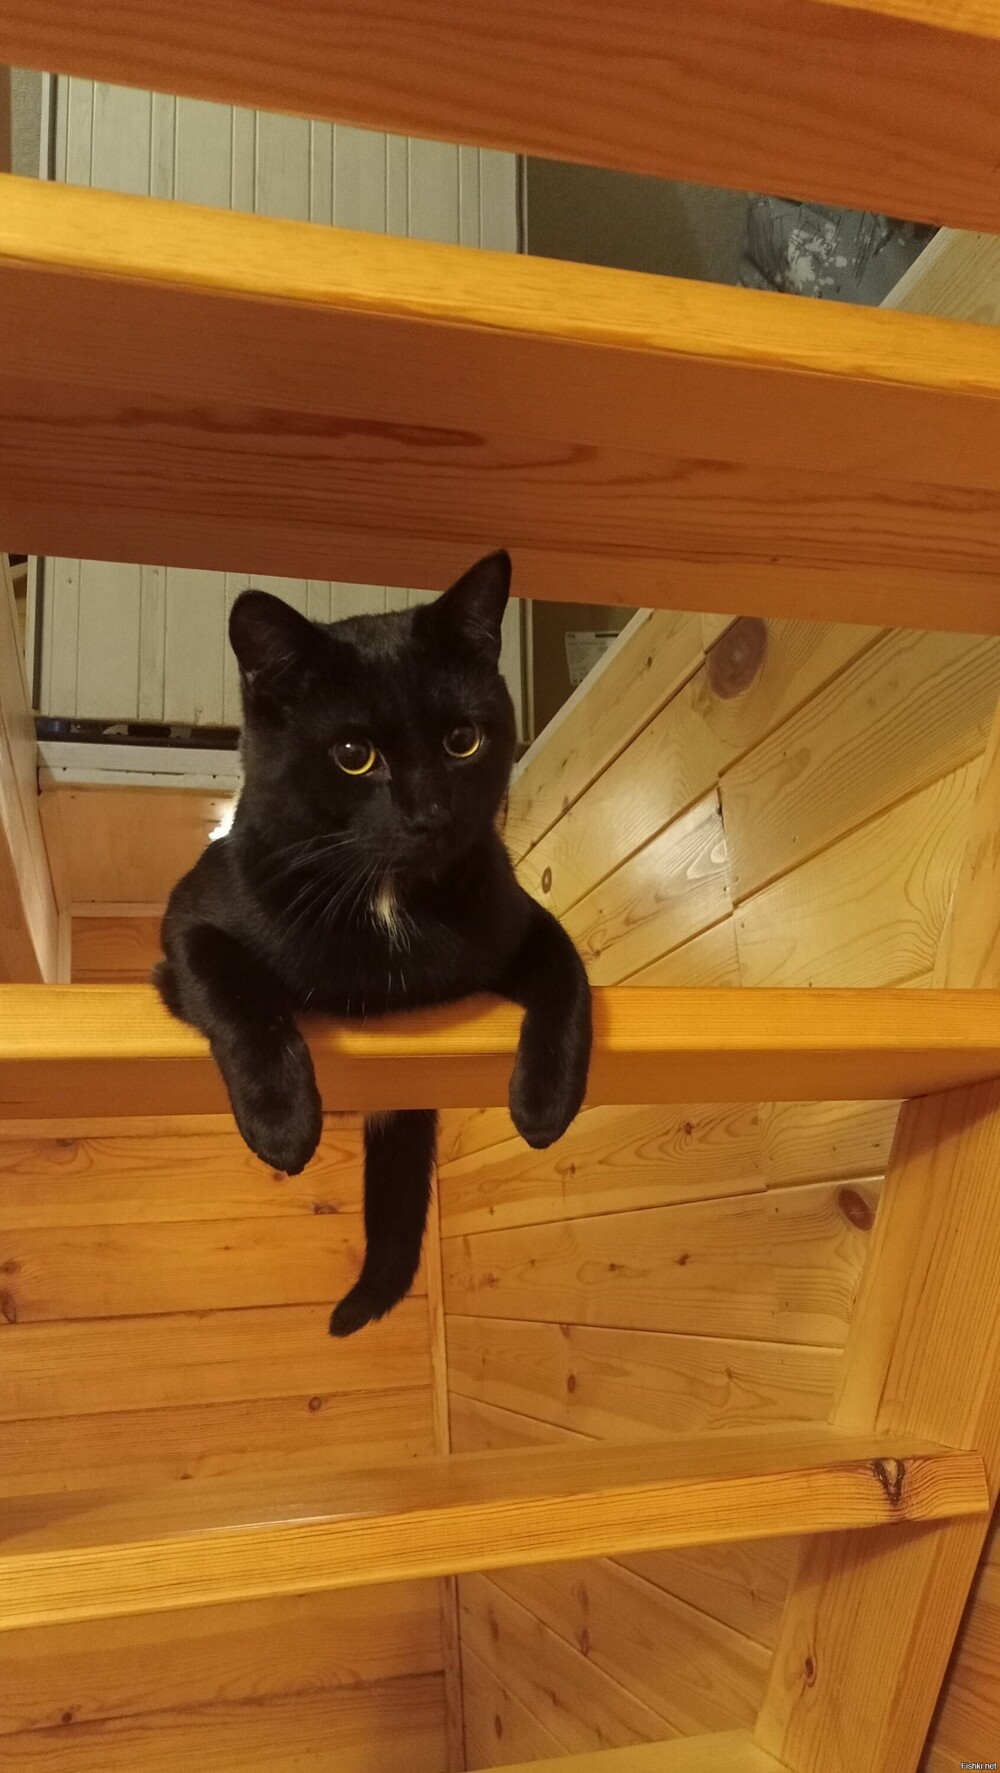 Вывезли кота первый раз на дачу, нашел себе любимое место - на лестнице